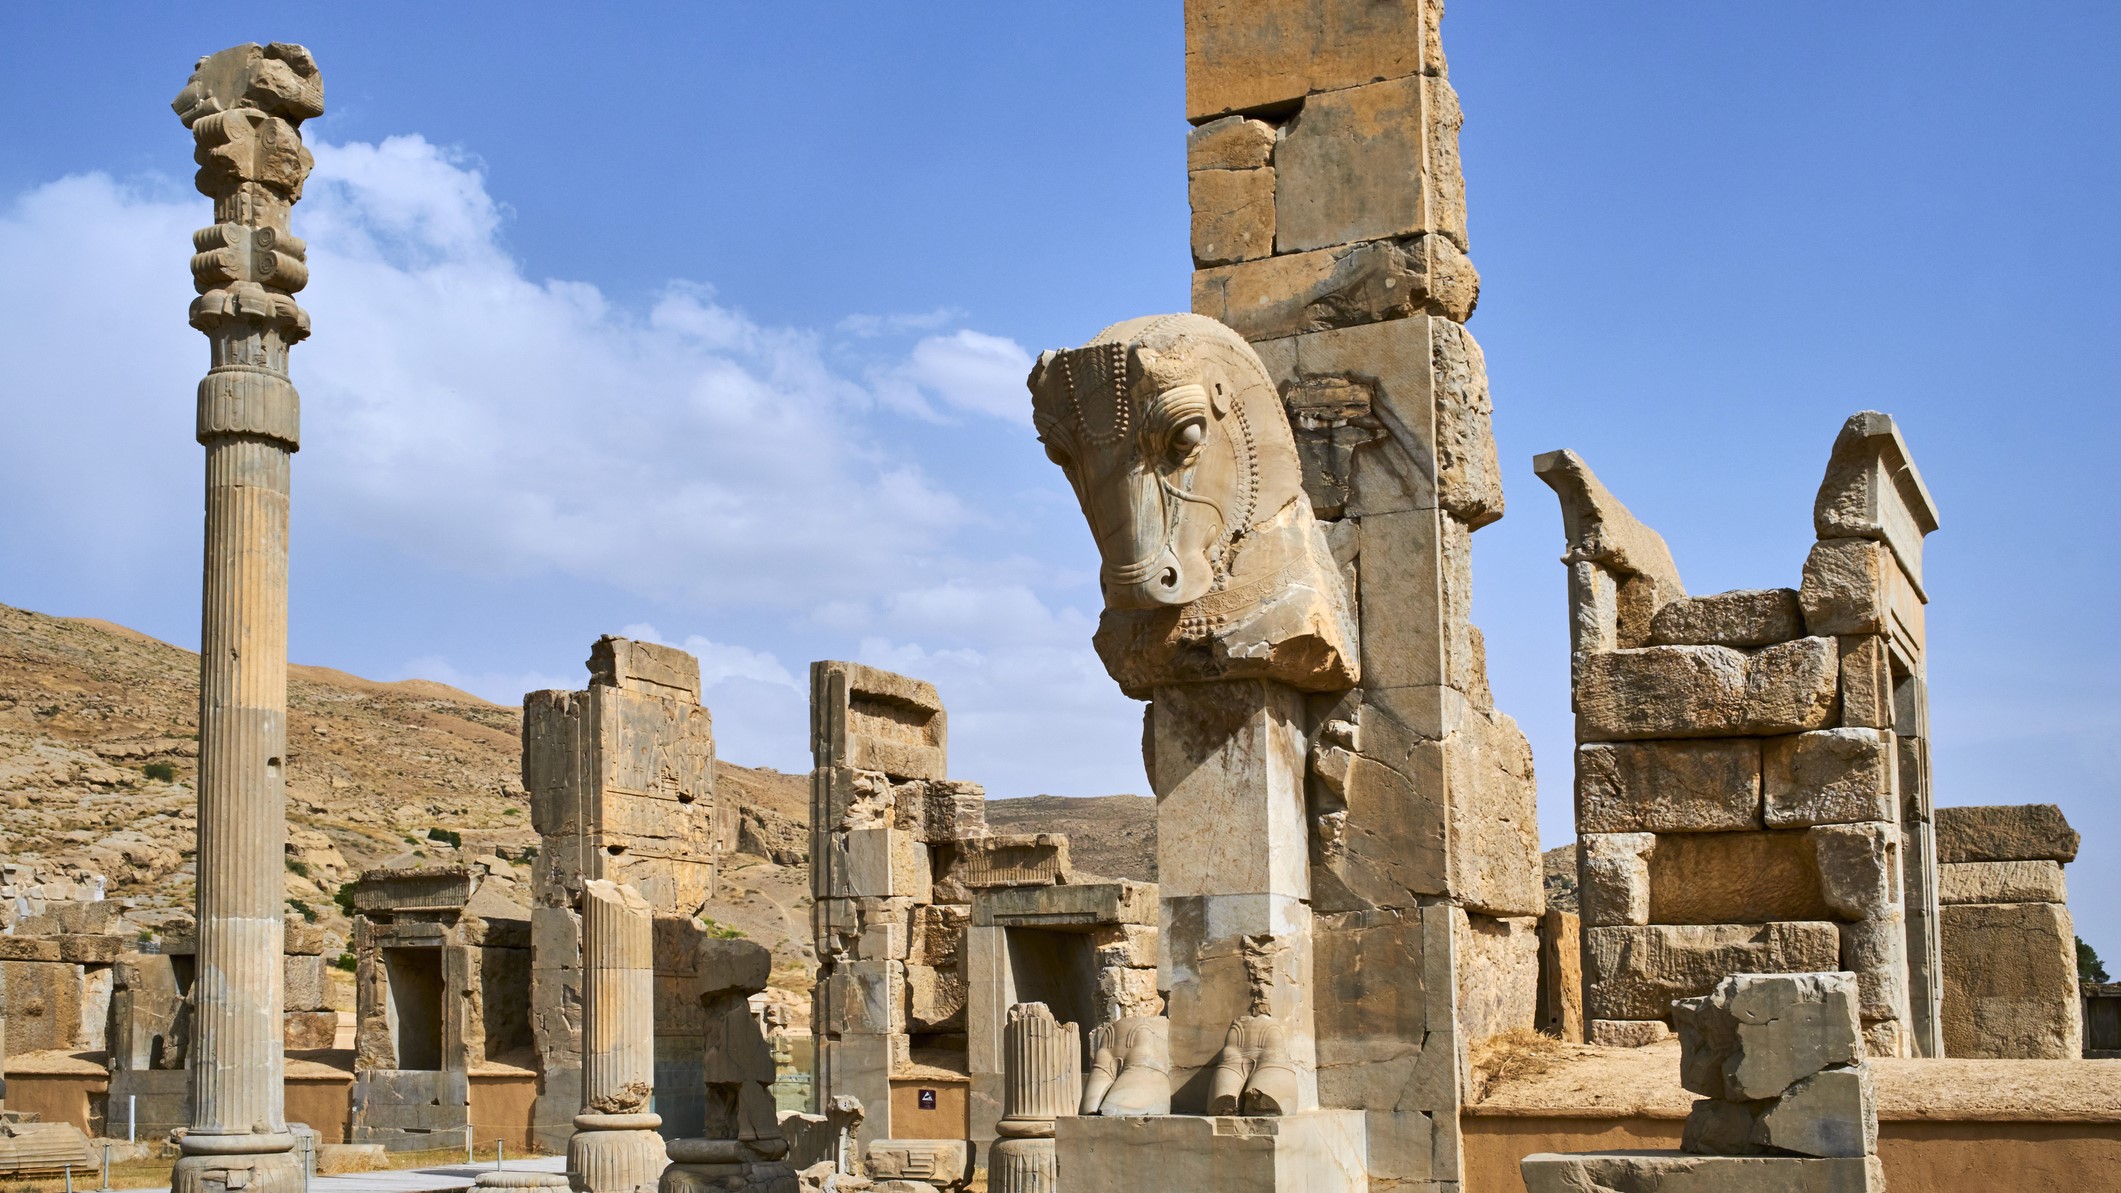 イラン、ファールス州、ペルセポリス、ユネスコ世界遺産、アパダニ宮殿の柱。 高い石柱が青空にそびえ立っています。 一番近いものには馬の頭が彫られているようです。